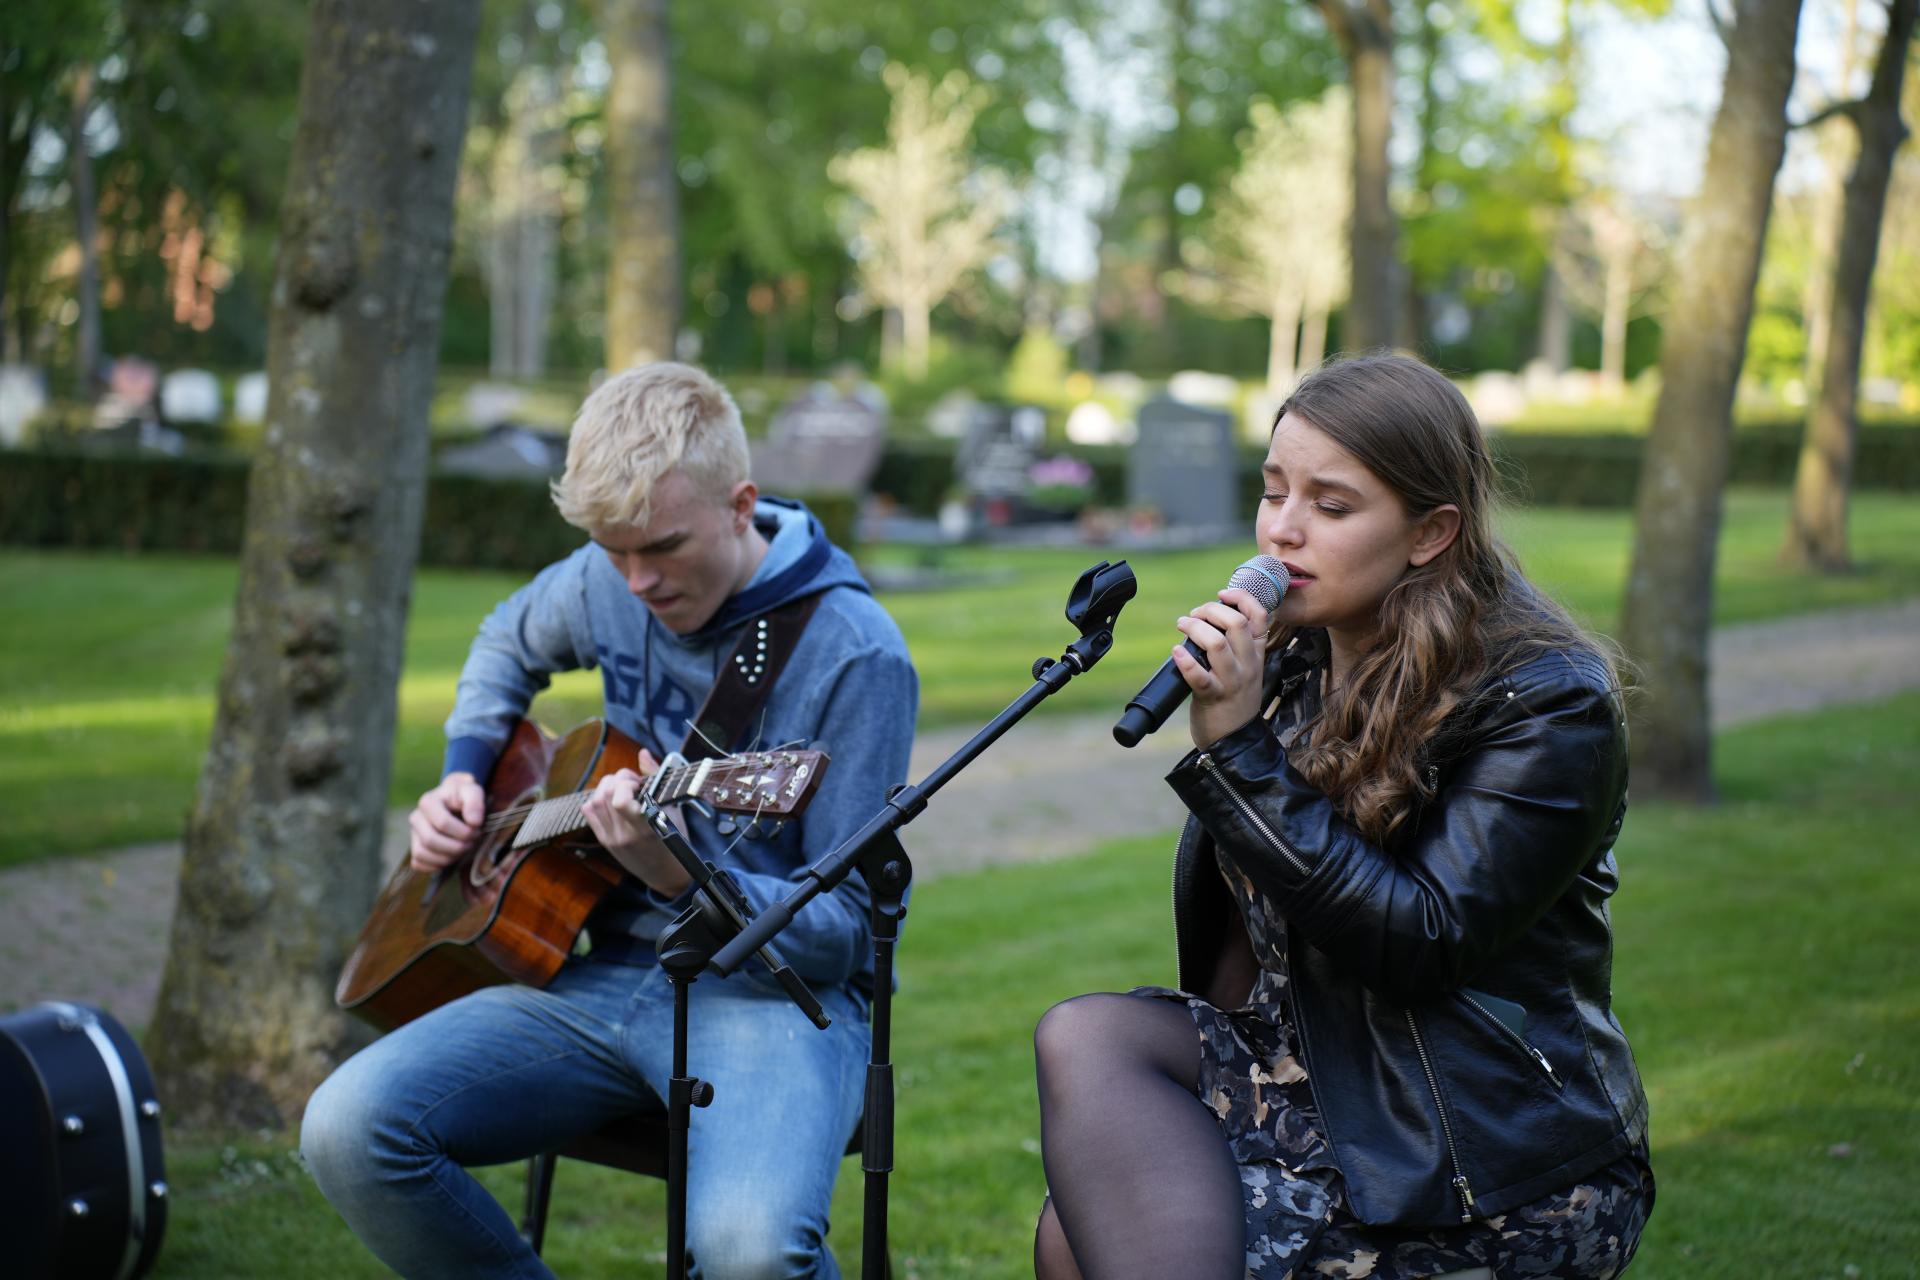 Een jongen die op een gitaar speelt en een meisje dat in een microfoon zingt. Ze zitten op een stoel op een begraafplaats. Ver op de achtergrond graven.